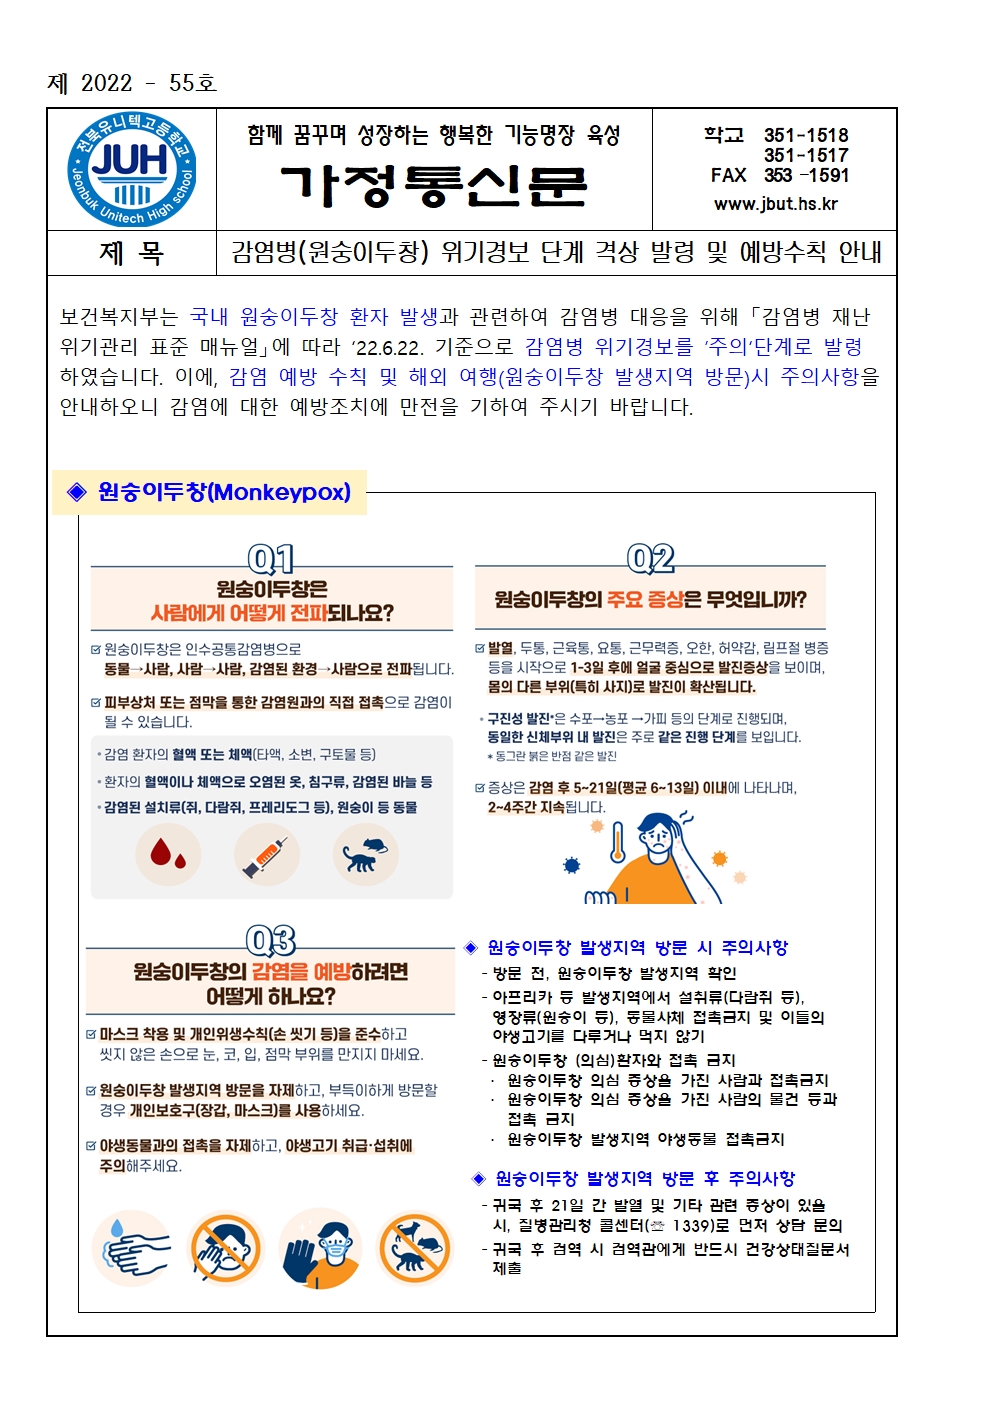 감염병(원숭이두창) 위기경보 단계 격상 발령 및 예방수칙 안내(2022-55)001